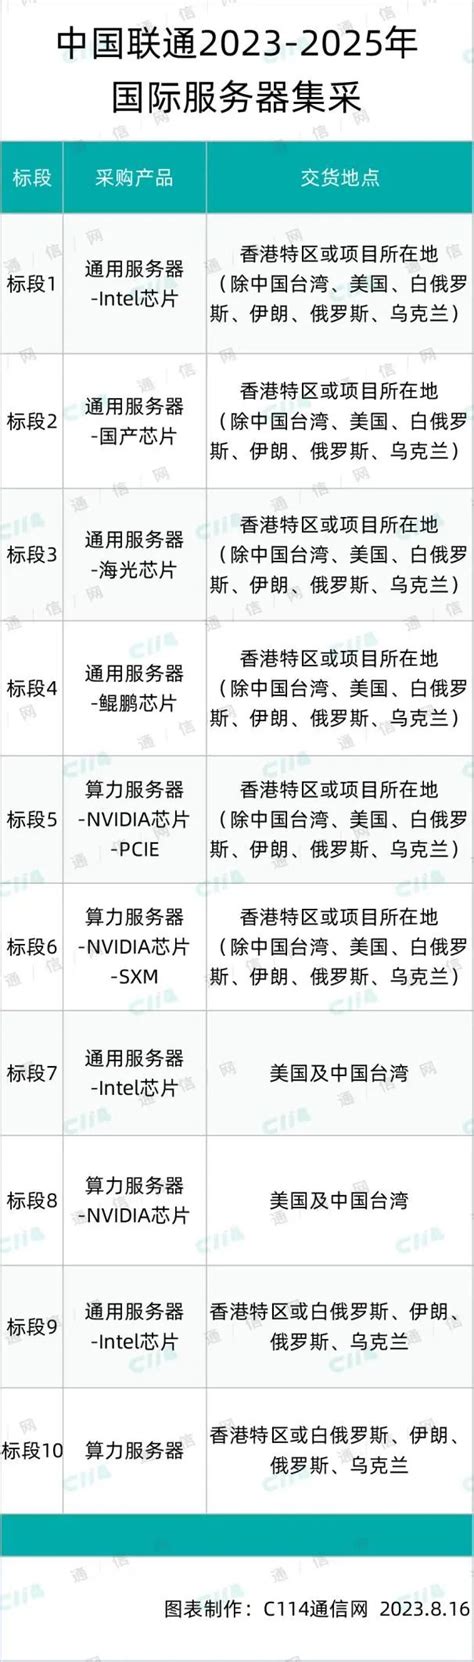 中国联通国际服务器集采标段3、5结果出炉：中兴、中通服中标 - 中国联通 — C114通信网